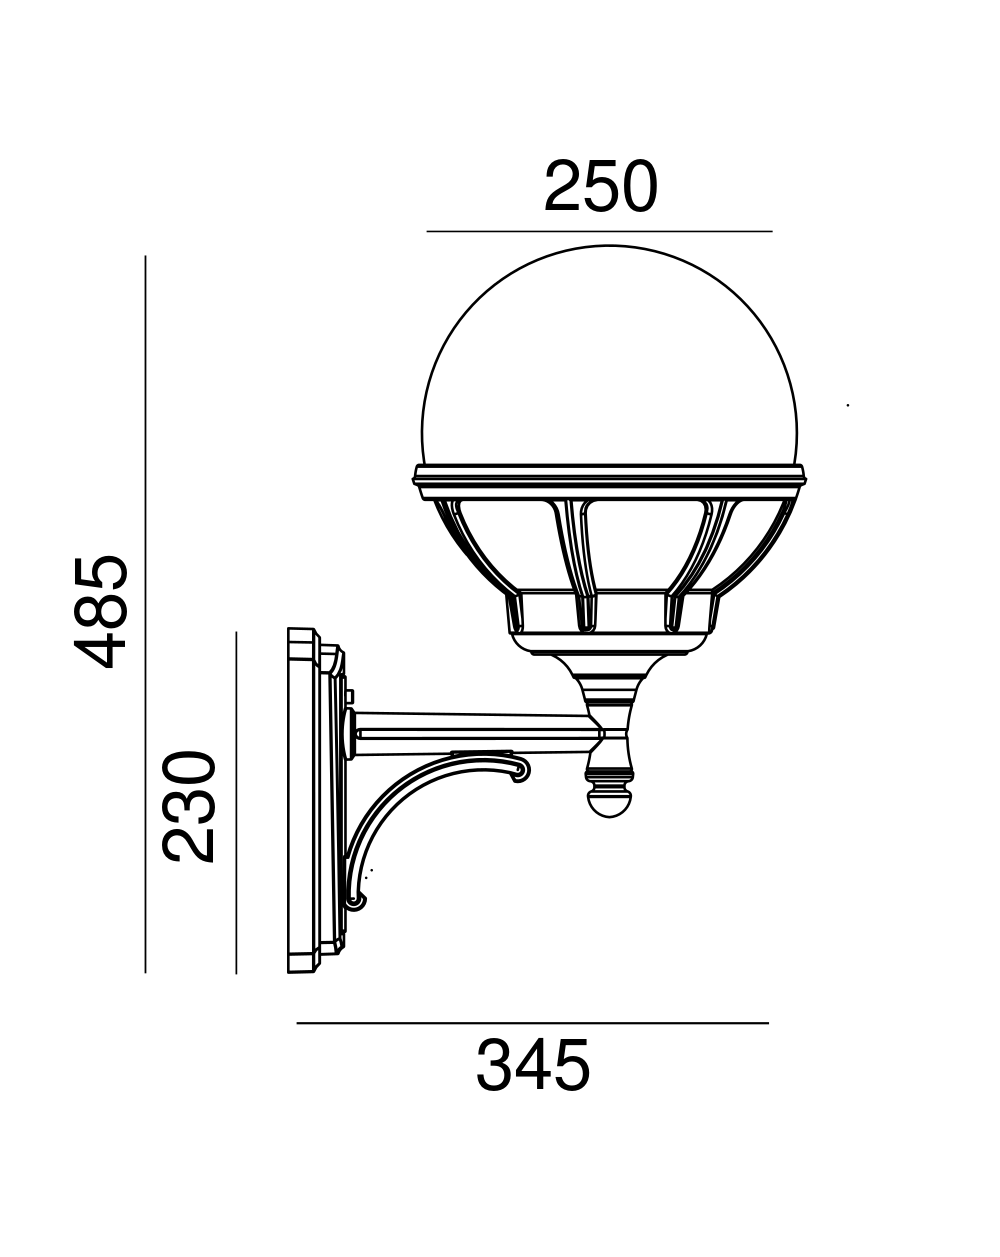 Lampa ścienna Bolonia - Norlys oprawa zewnętrzna kinkiet w czarnym lub białym kolorze korpusu